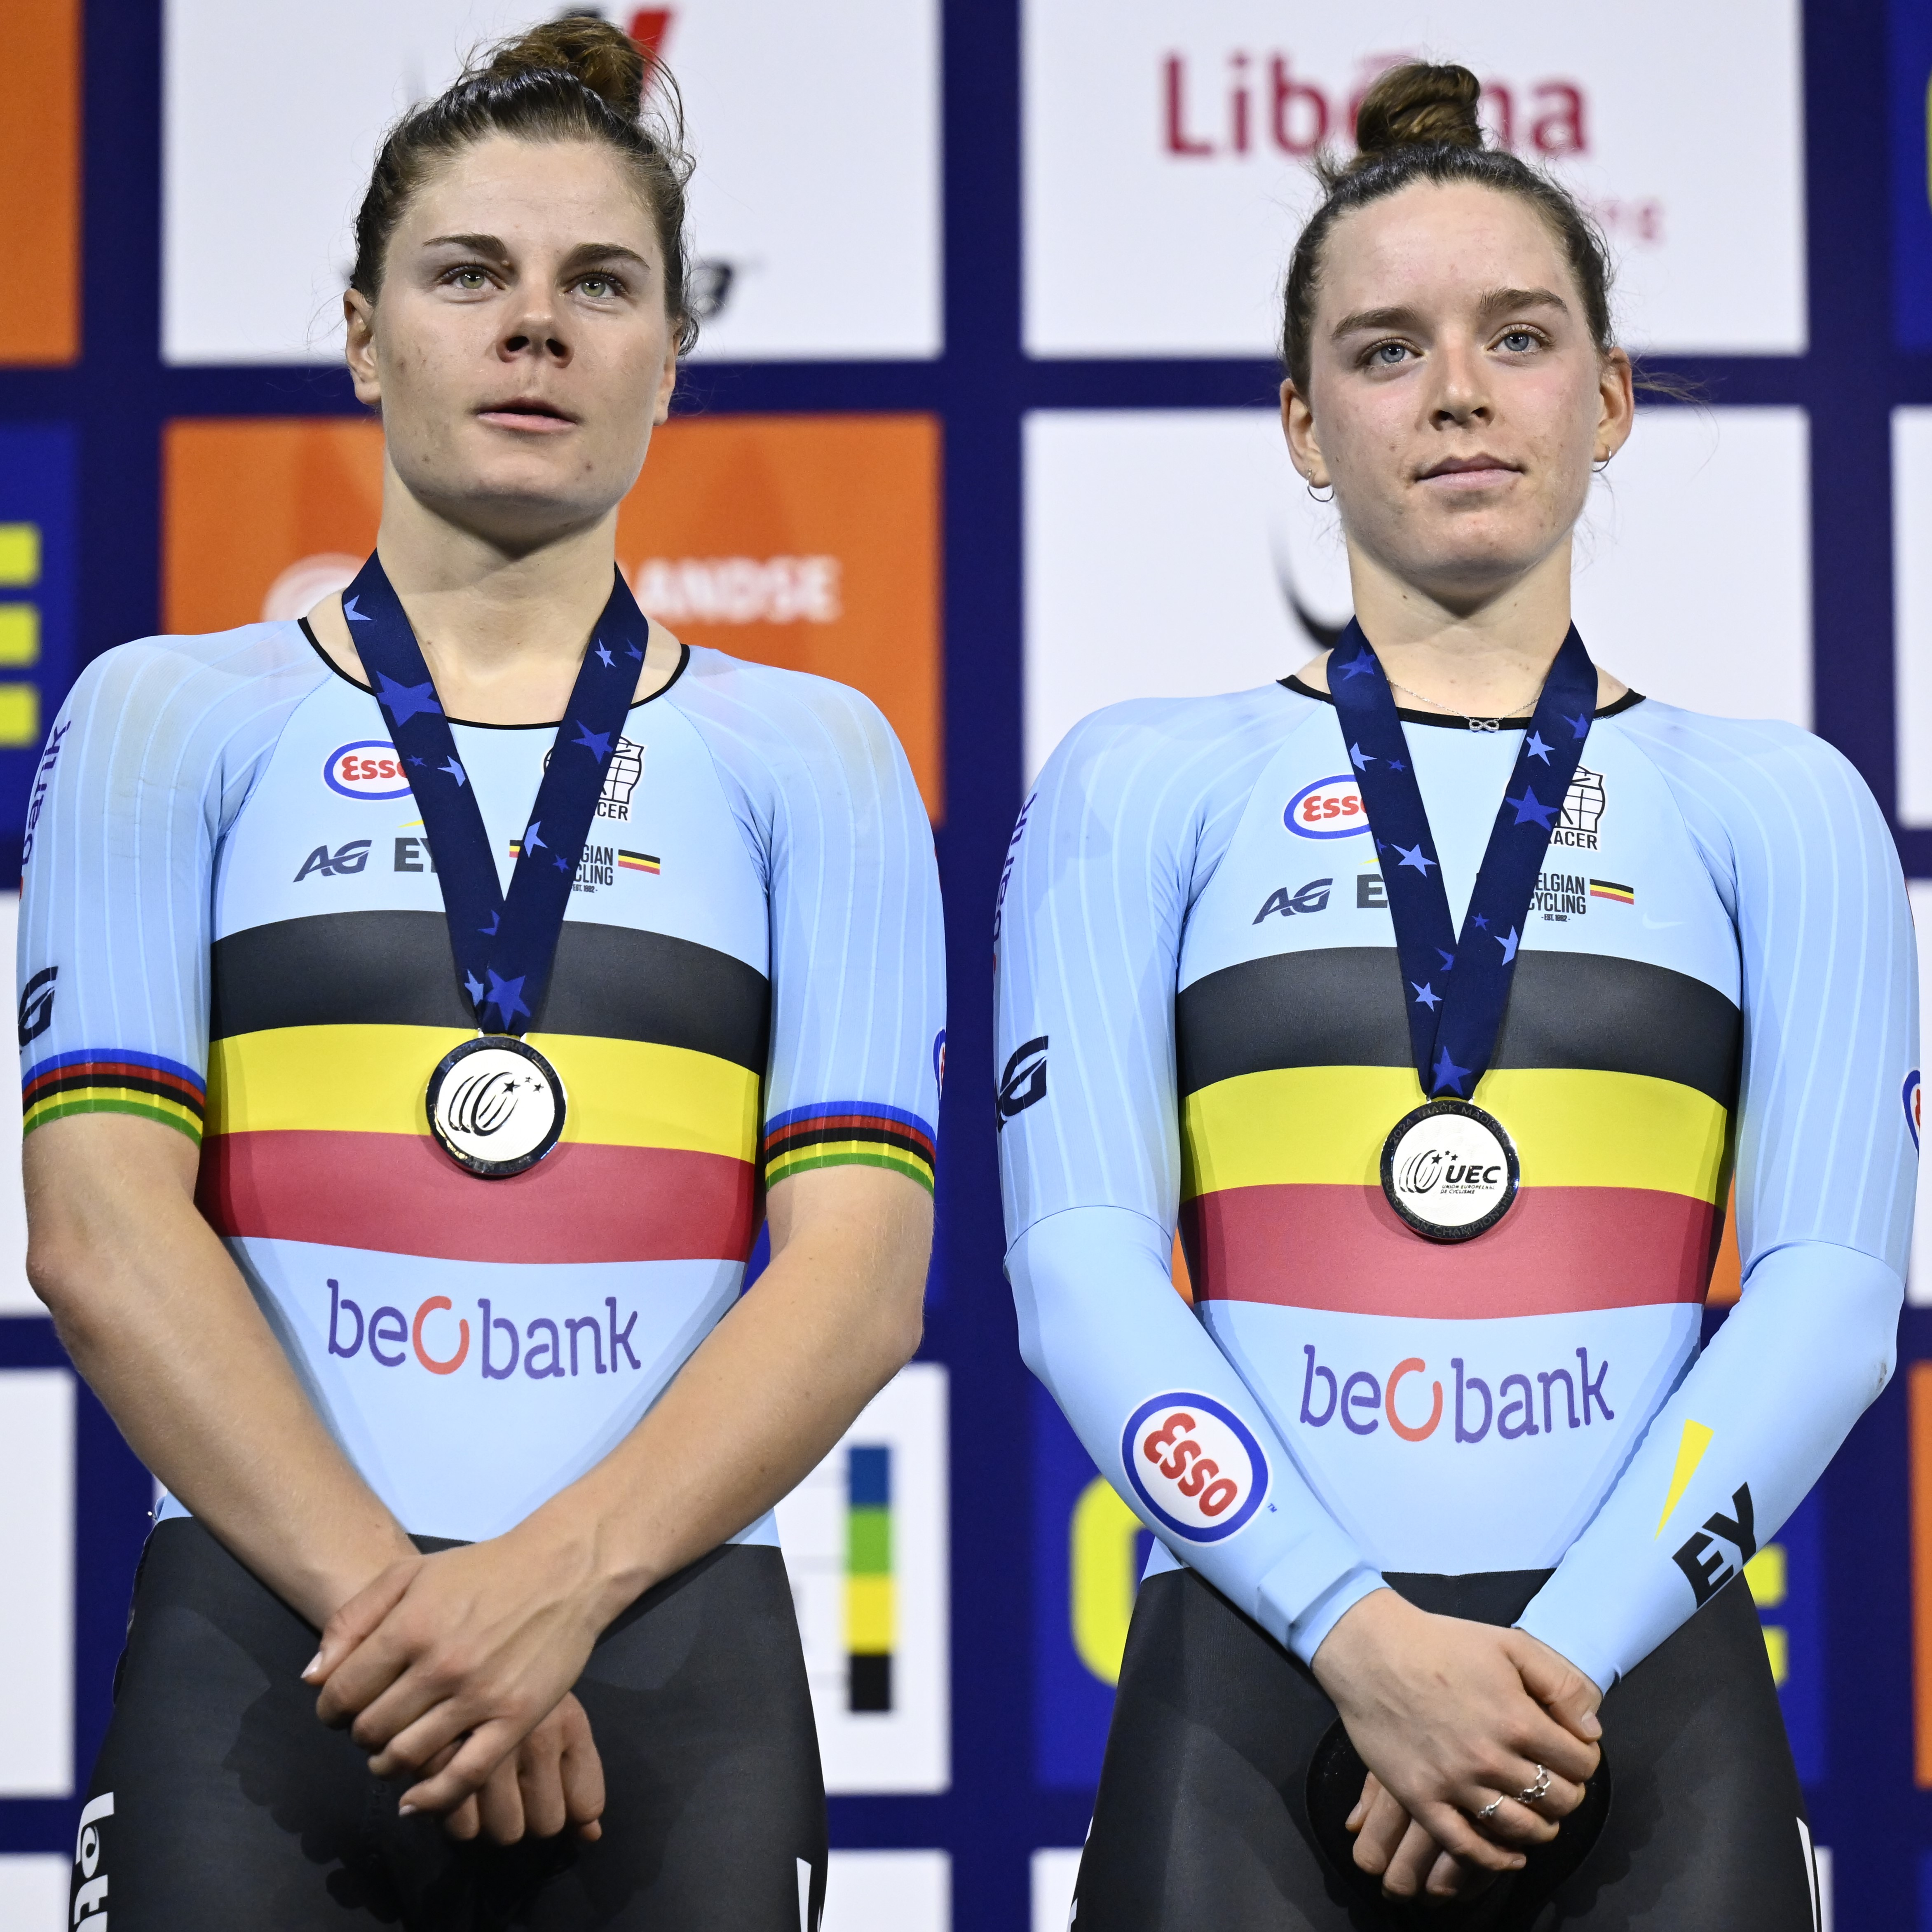 La médaille d'argent pour Katrijn De Clercq (Madison) aux Championnats d'Europe de cyclisme sur piste 